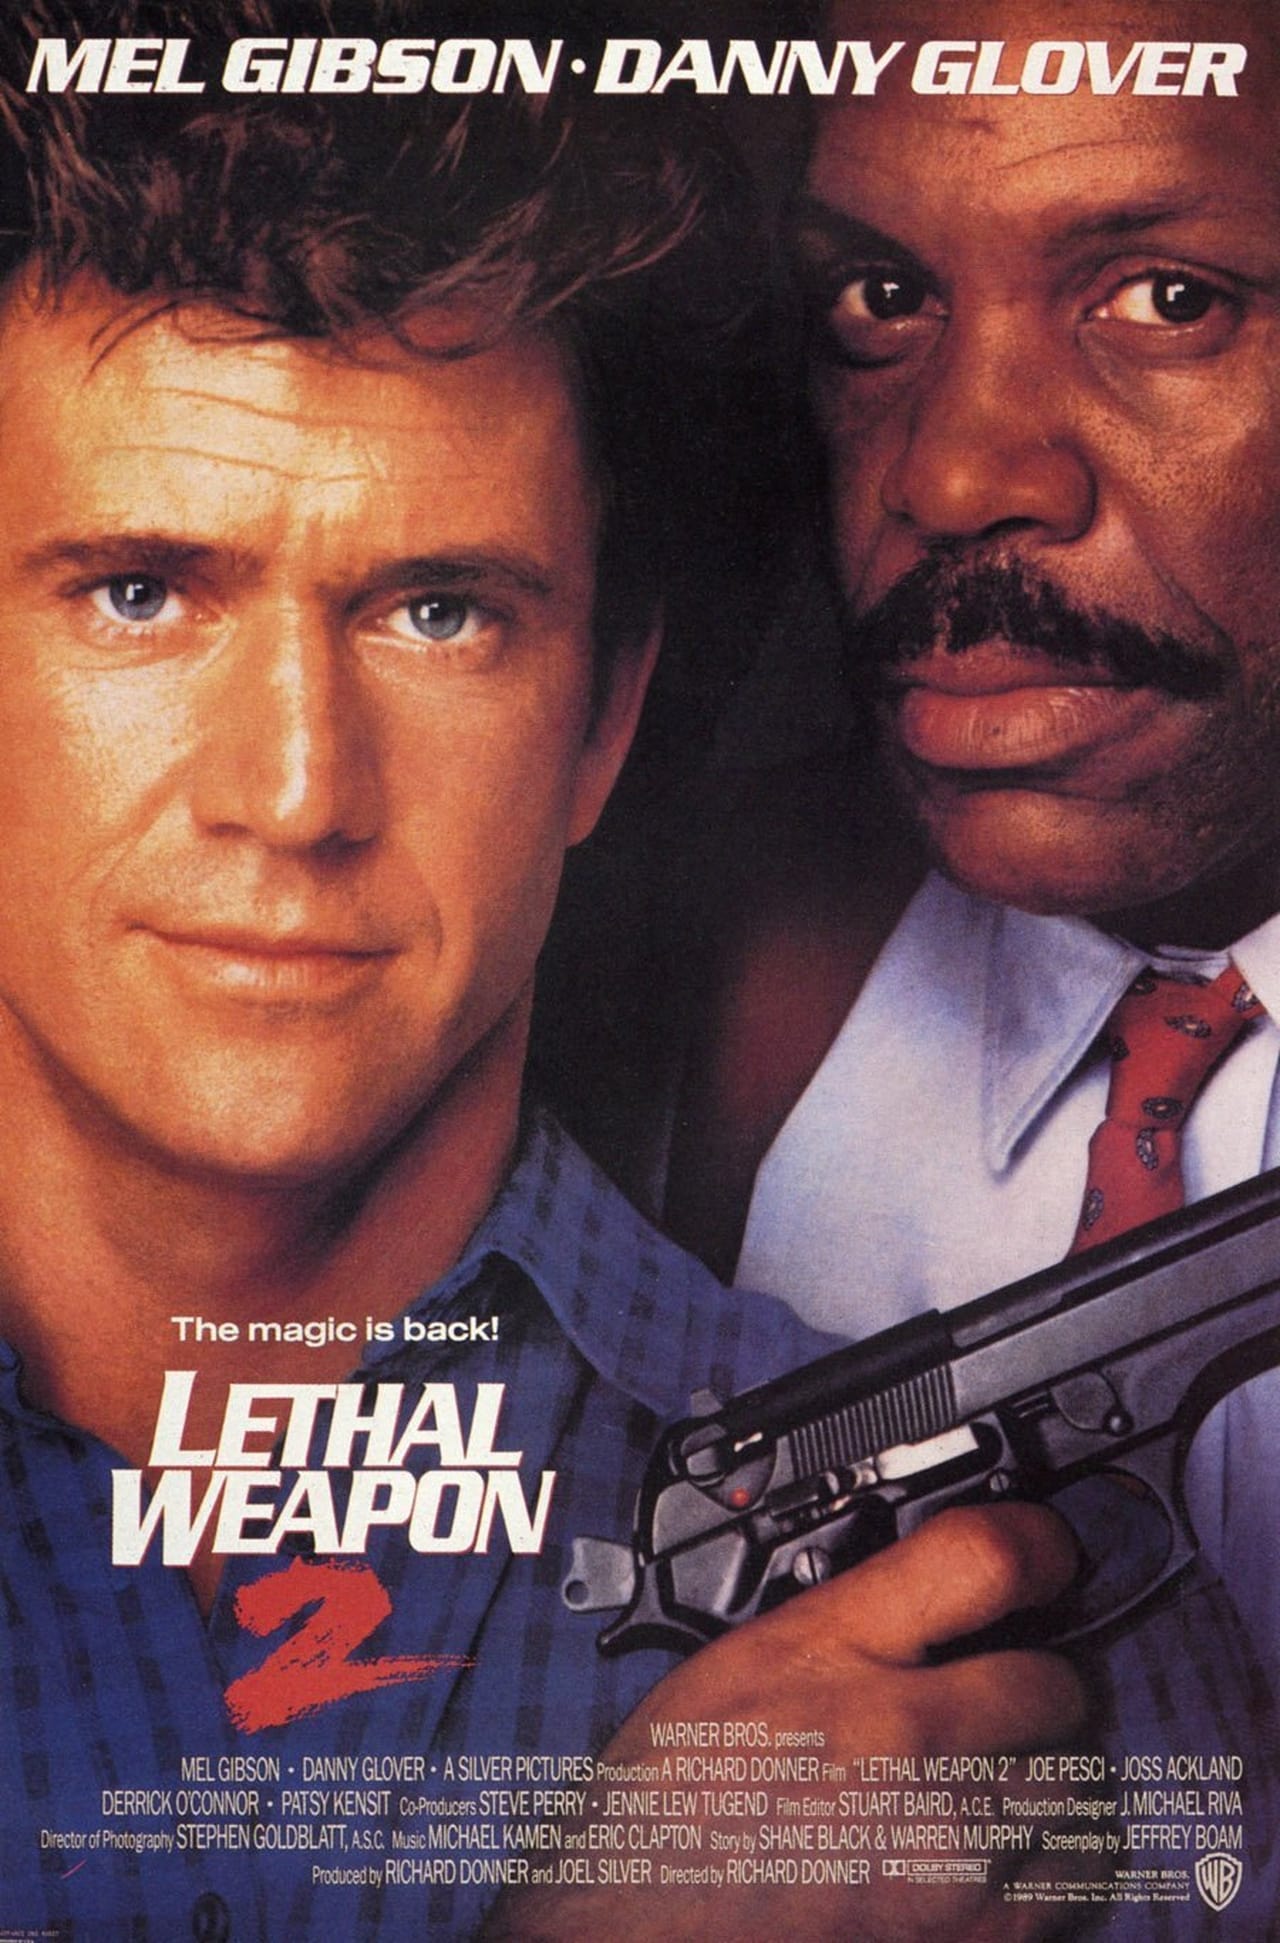 EN - Lethal Weapon 2 (1989) JOE PESCI